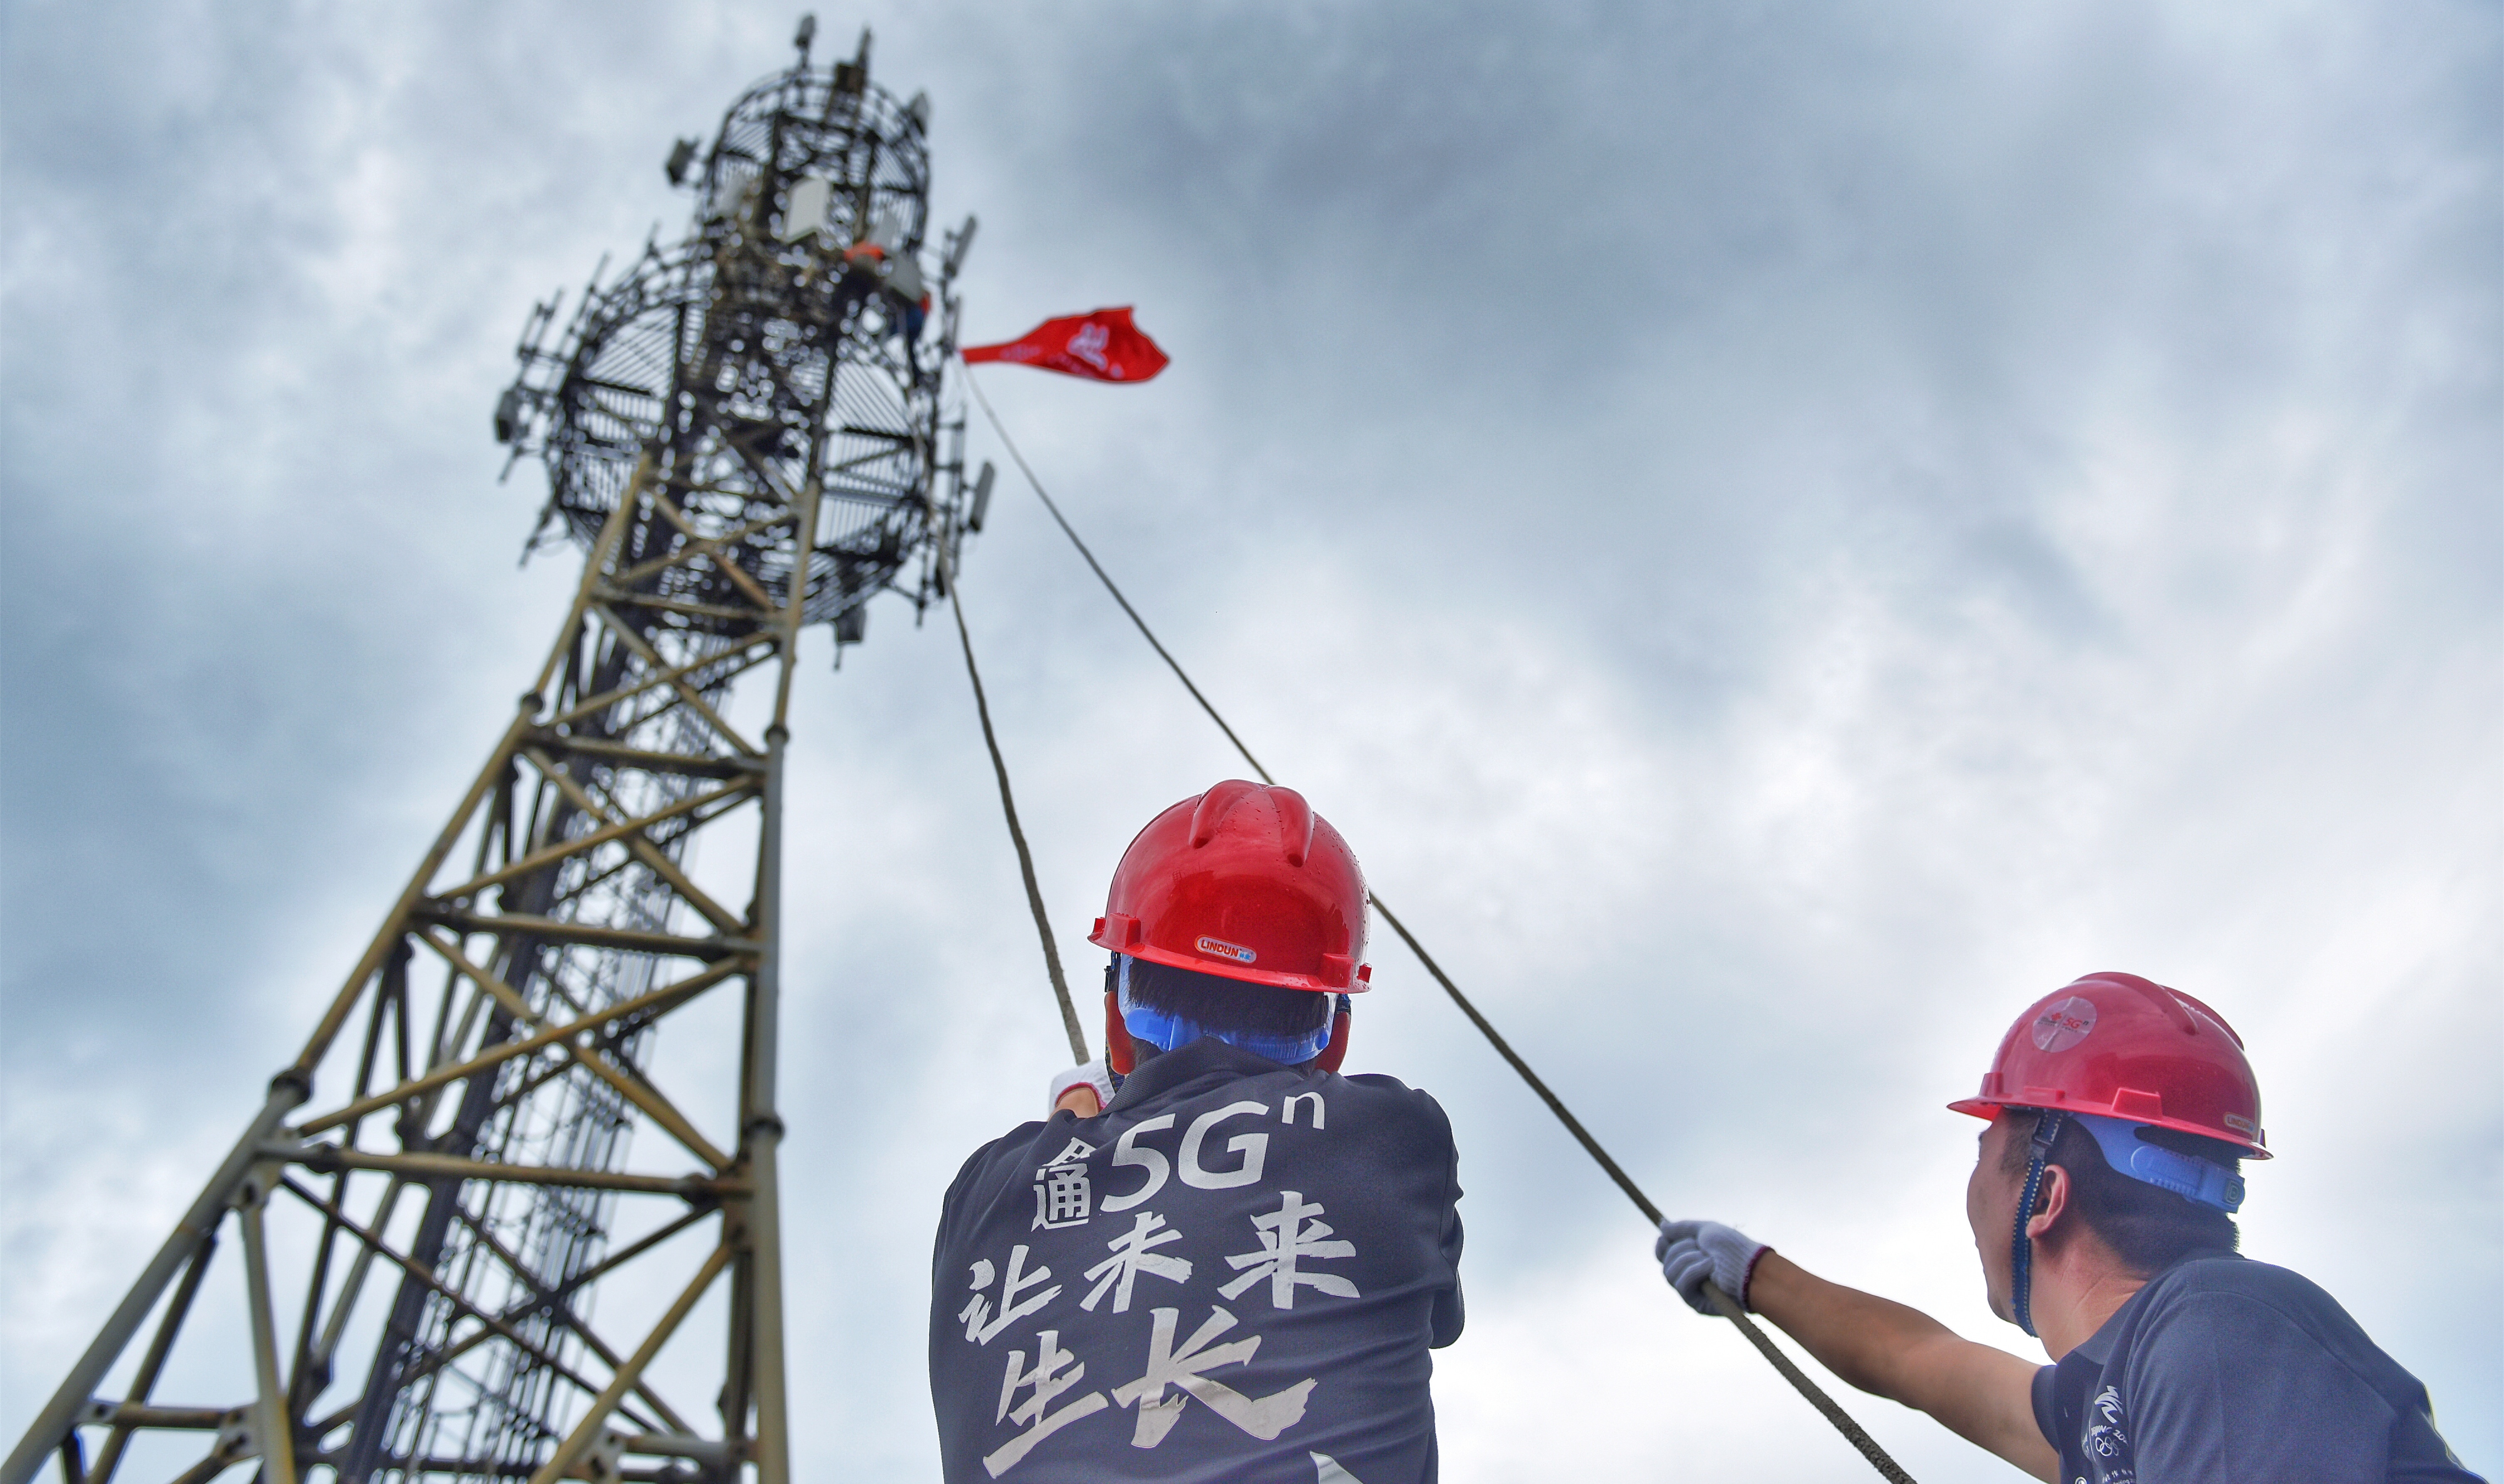 新华网：浙江正全力推进5G产业布局。迈入新征程，搭乘5G发展的东风，联通又将谋划哪些跨域、跨界的新布局？